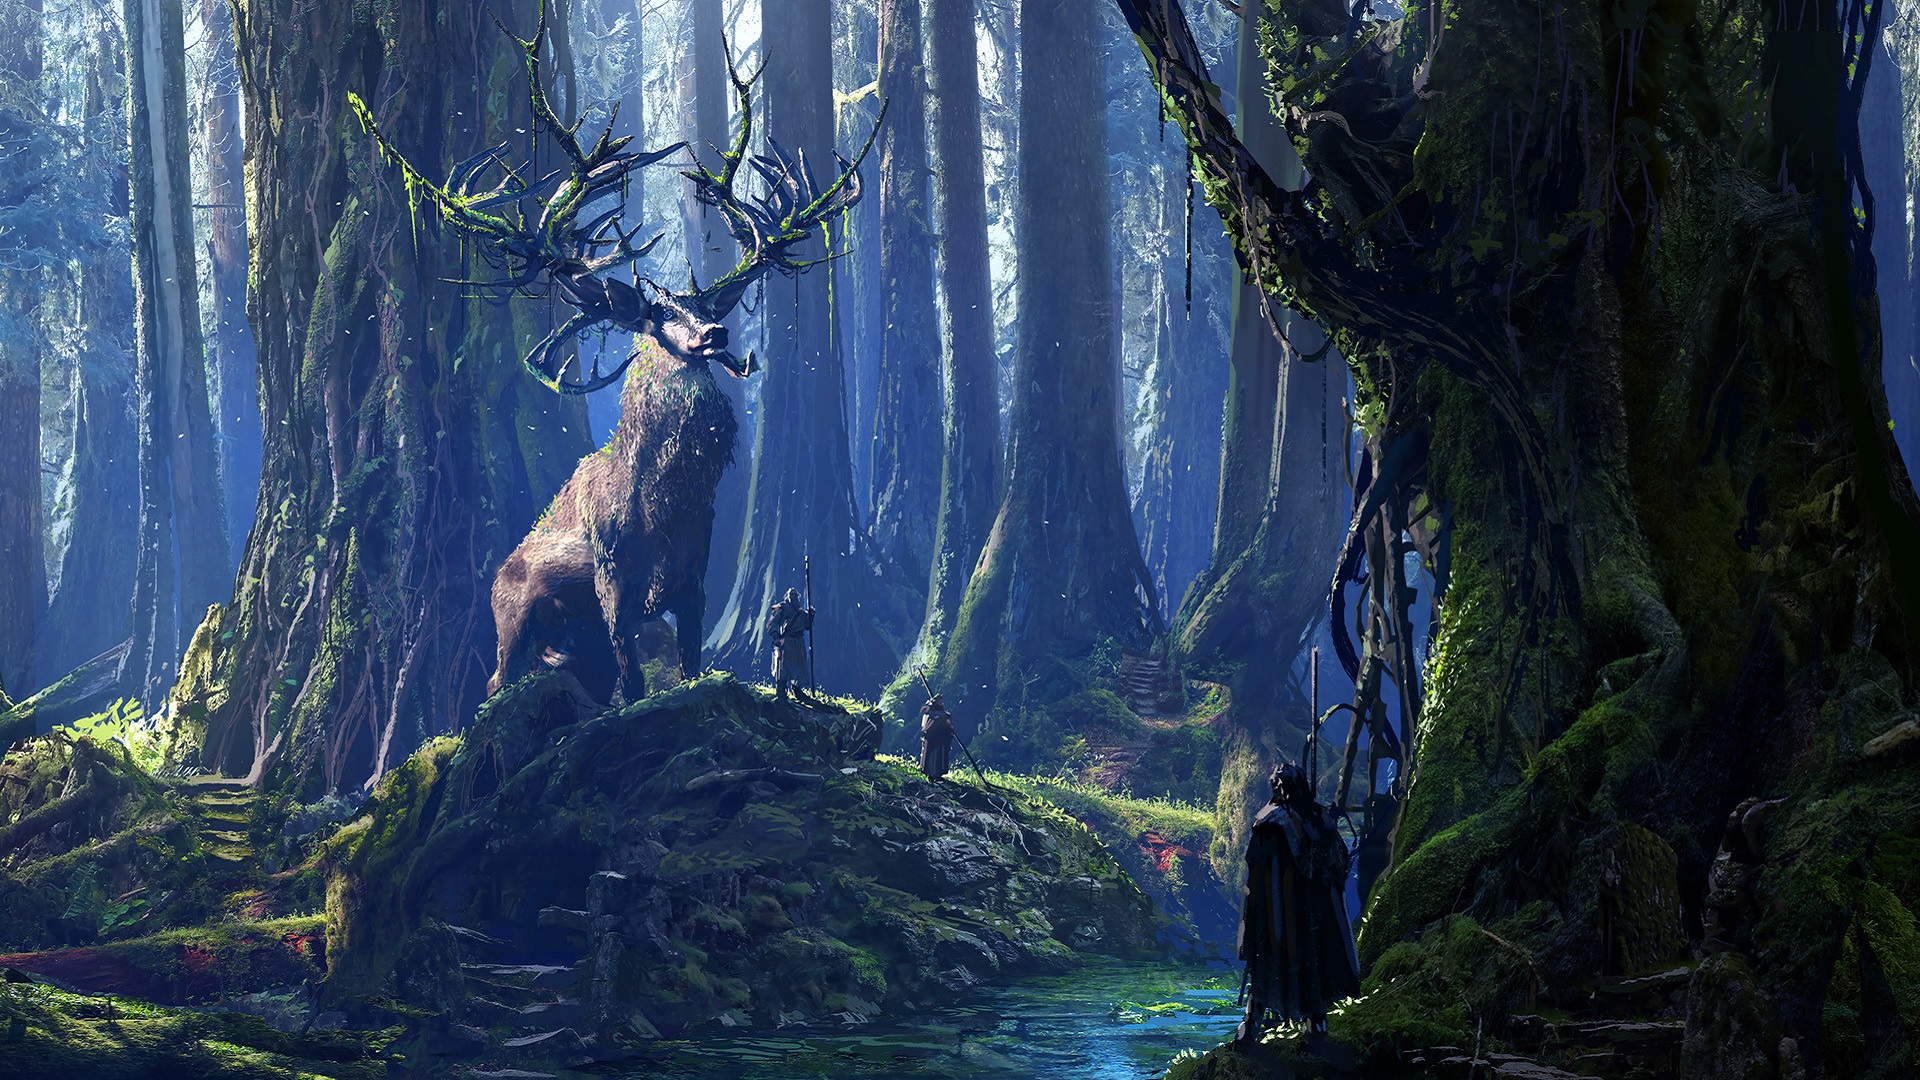 druids, Stags, River, Forest, Moss, Fantasy art, Digital art Wallpaper